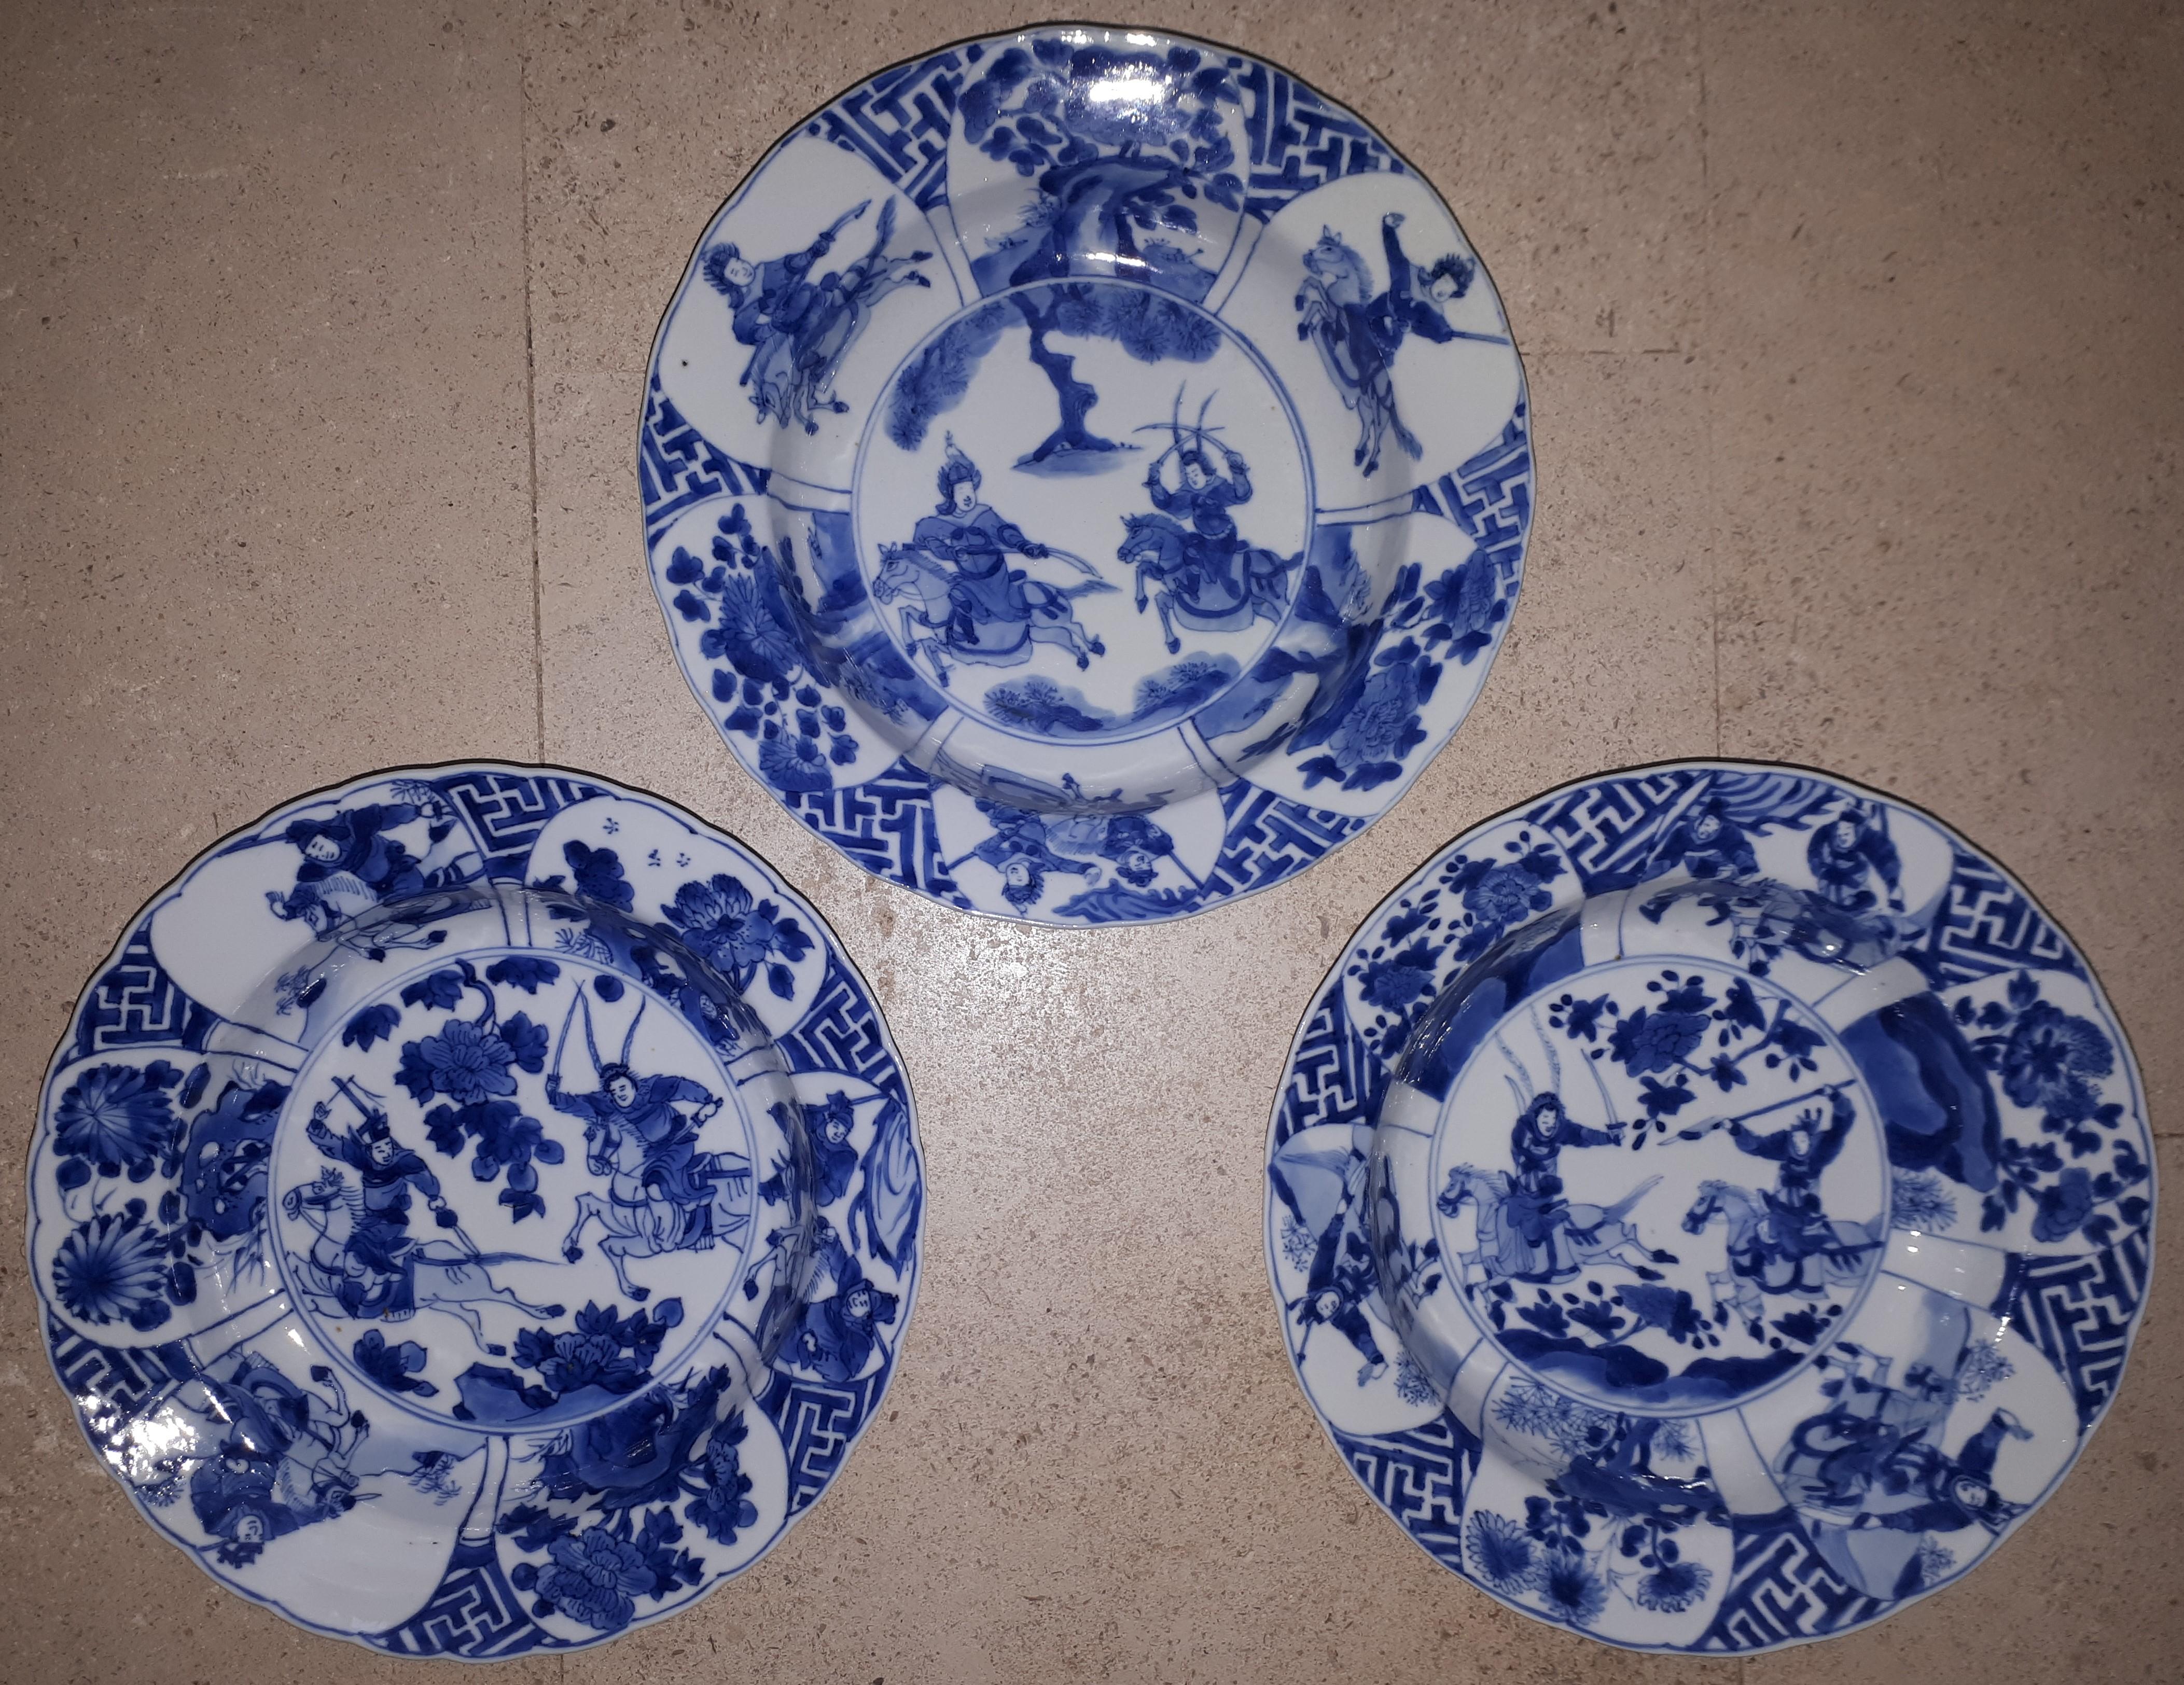 Leicht gelappte Teller in sechs Spangen mit ausgestellten Rändern, verziert mit blauem Unterglasurdekor und Kriegern.
Null Mängel, Platten in seltenem perfekten Zustand.
China, Ende des 17. Jahrhunderts.